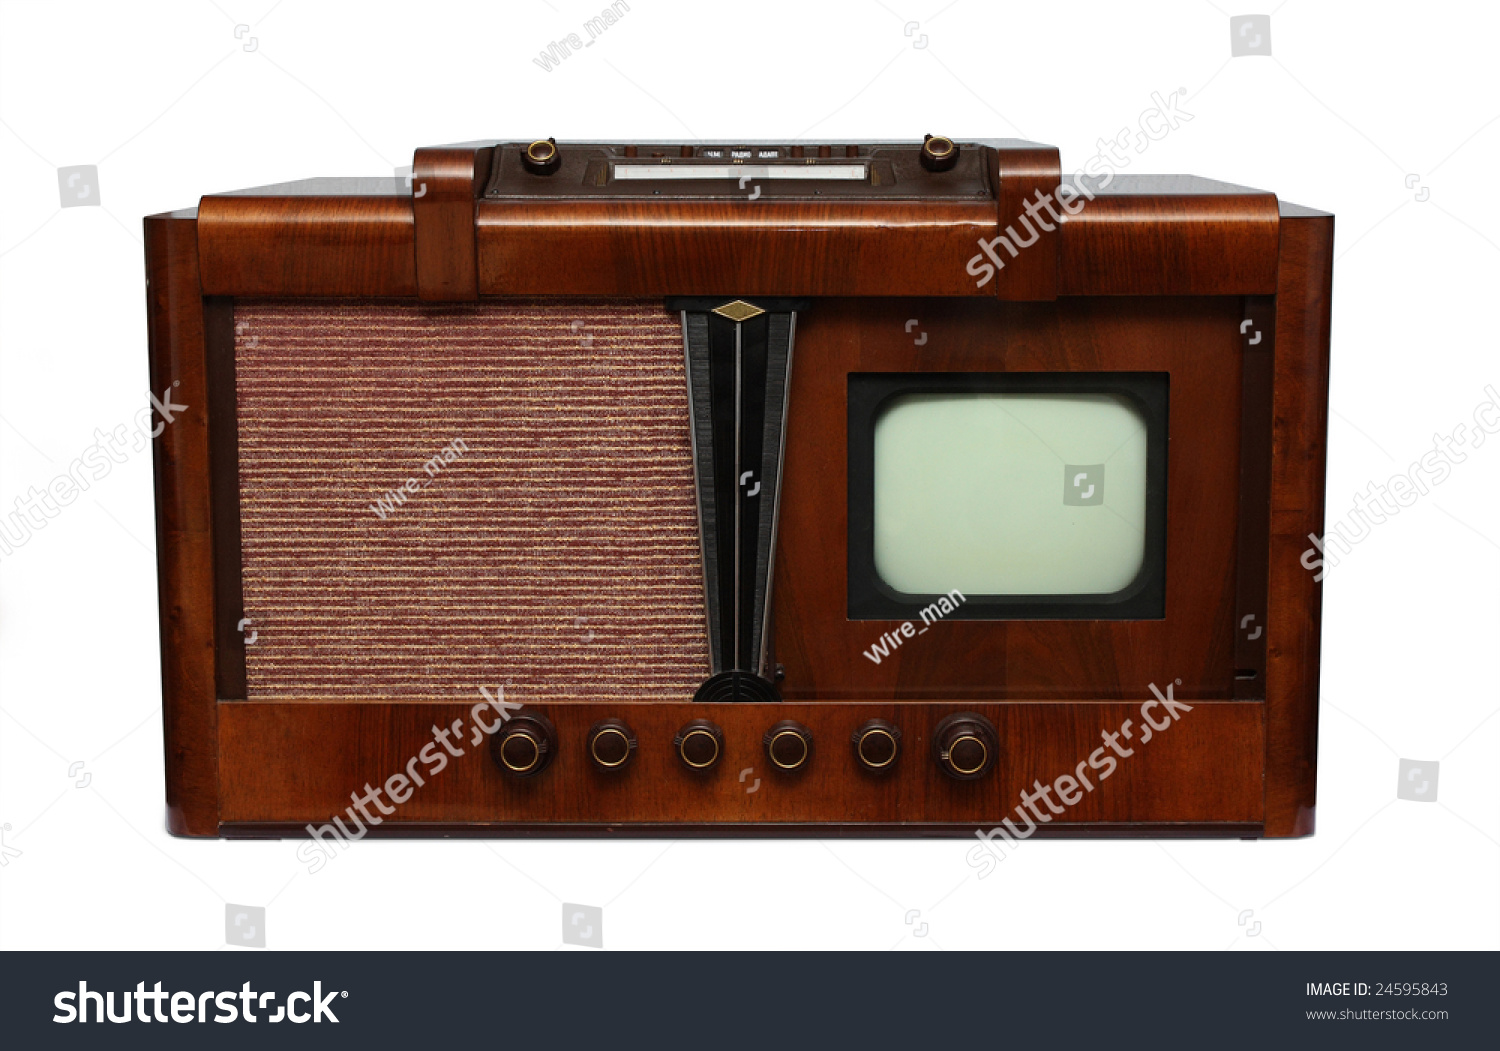 Когда был 1 телевизор. Первый телевизор. Телевизор 1930 года. Механический телевизор. Самый первый телевизор.